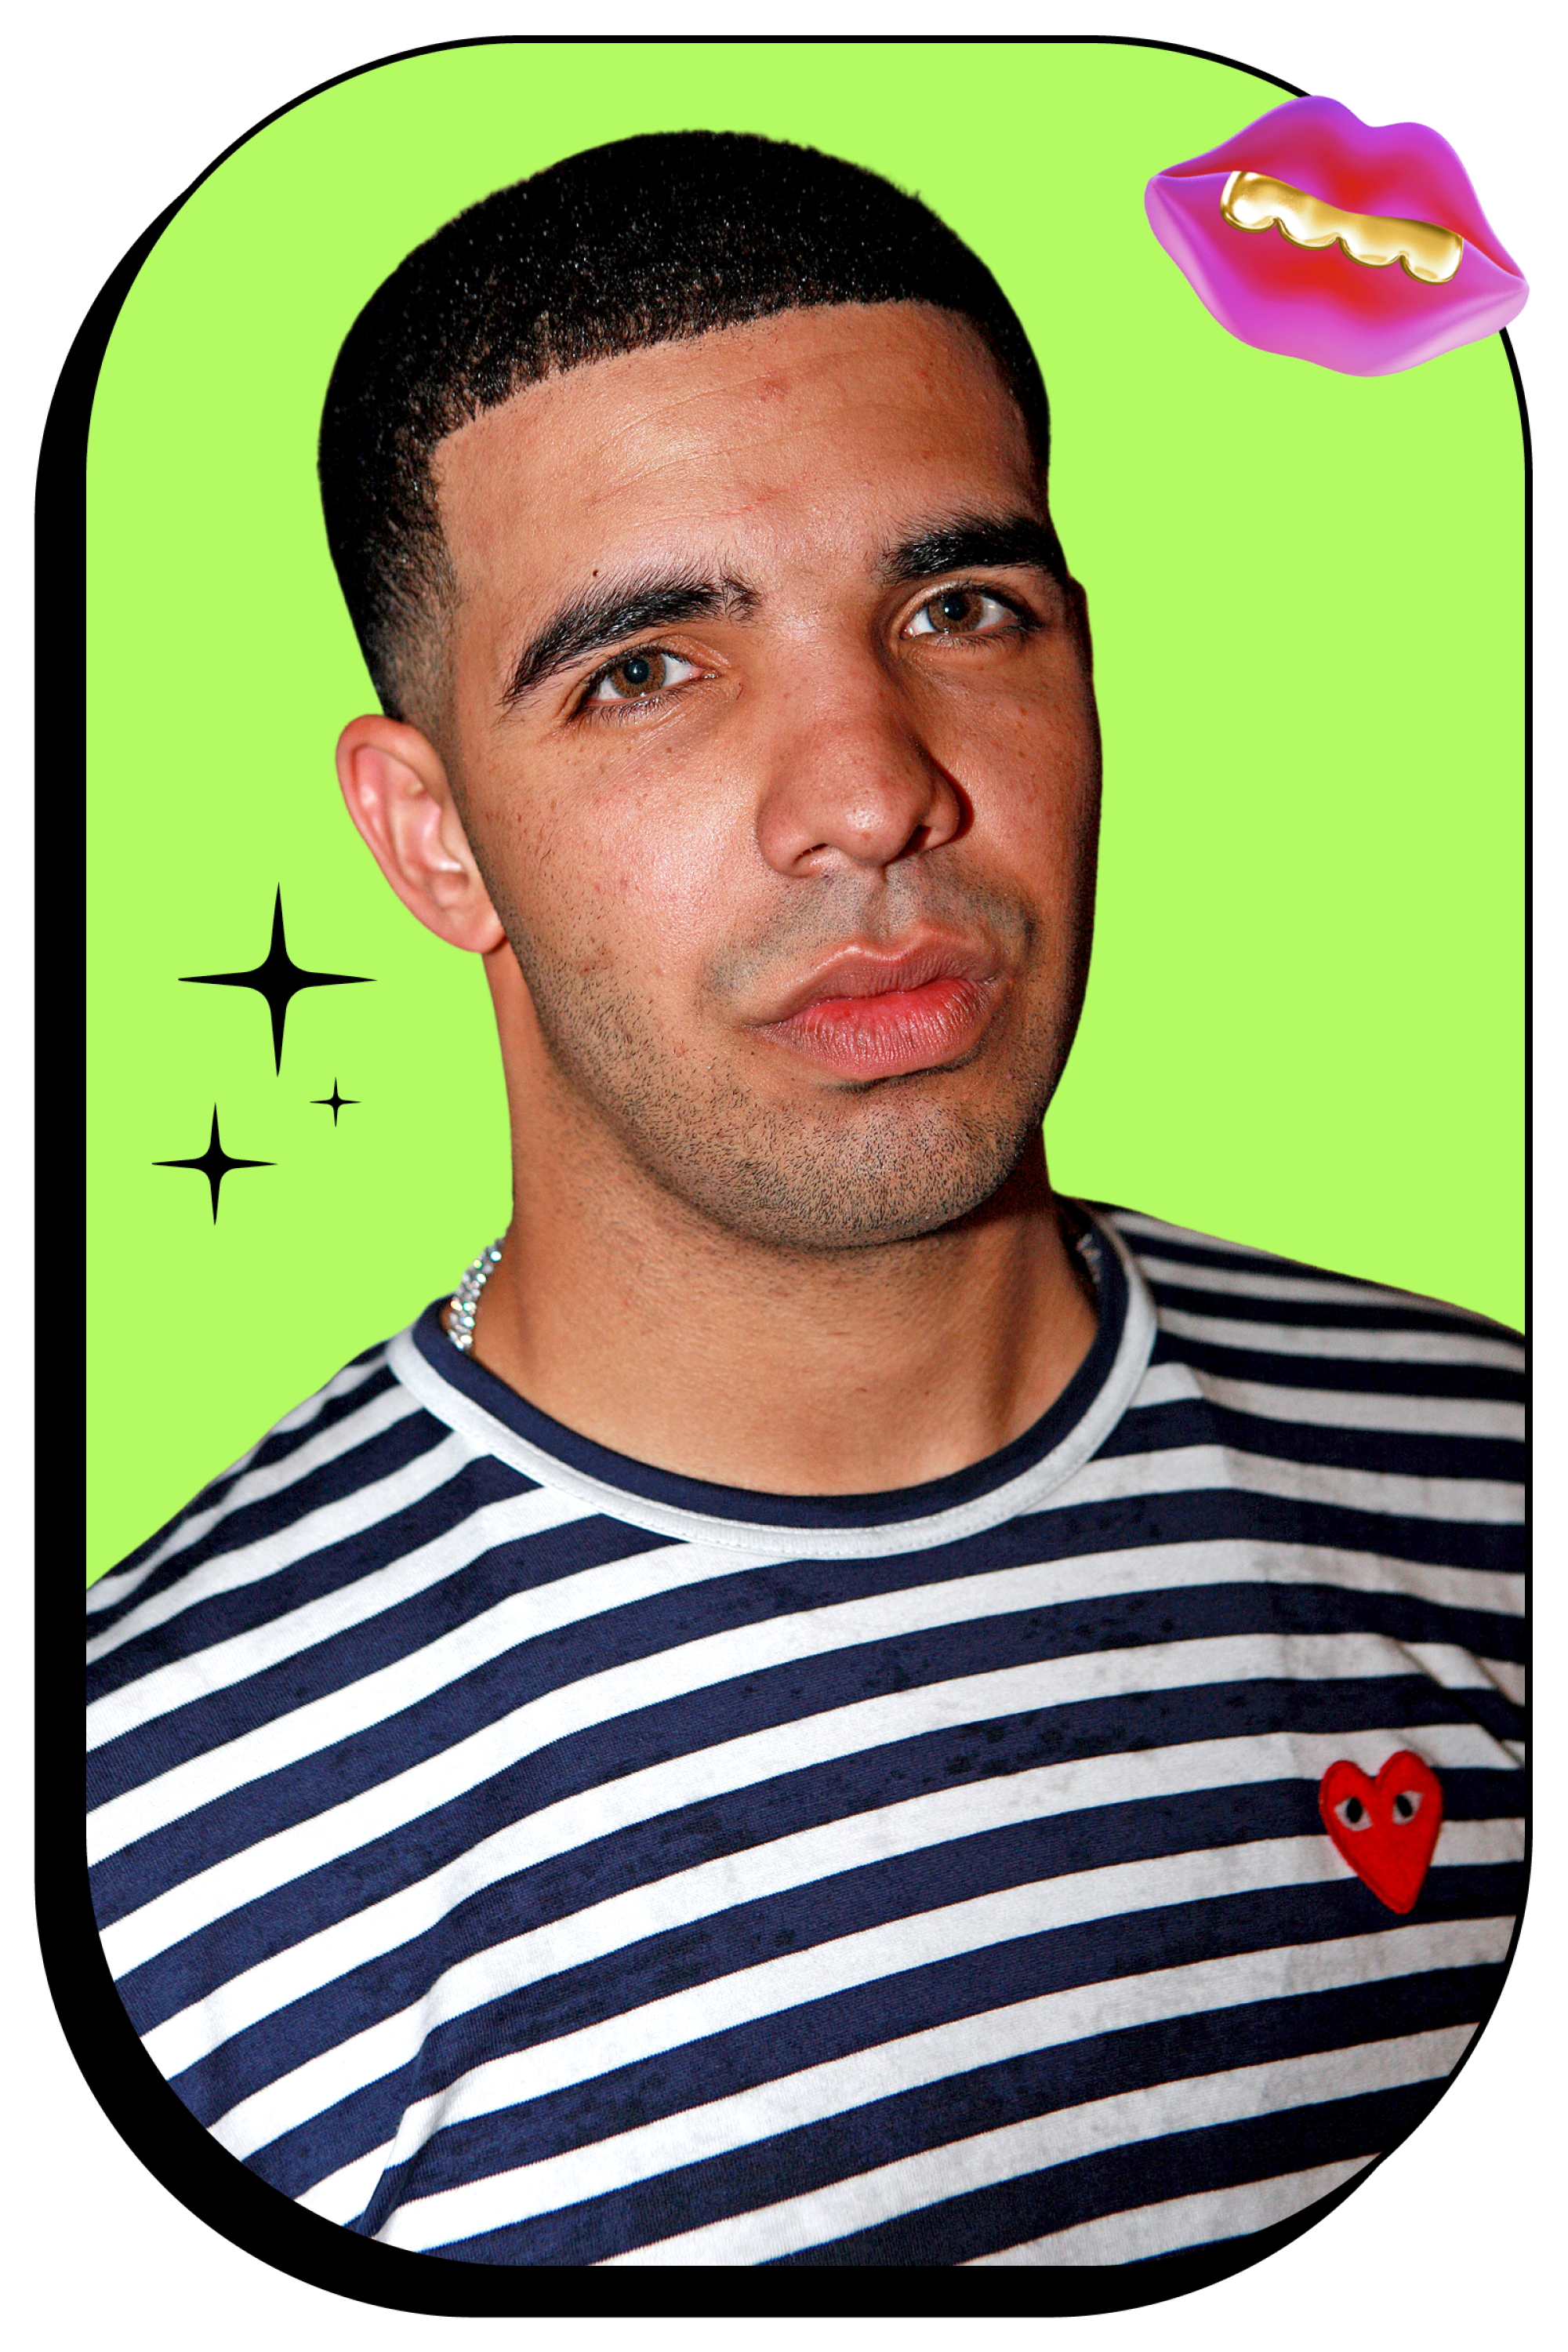 Drake in 2009.